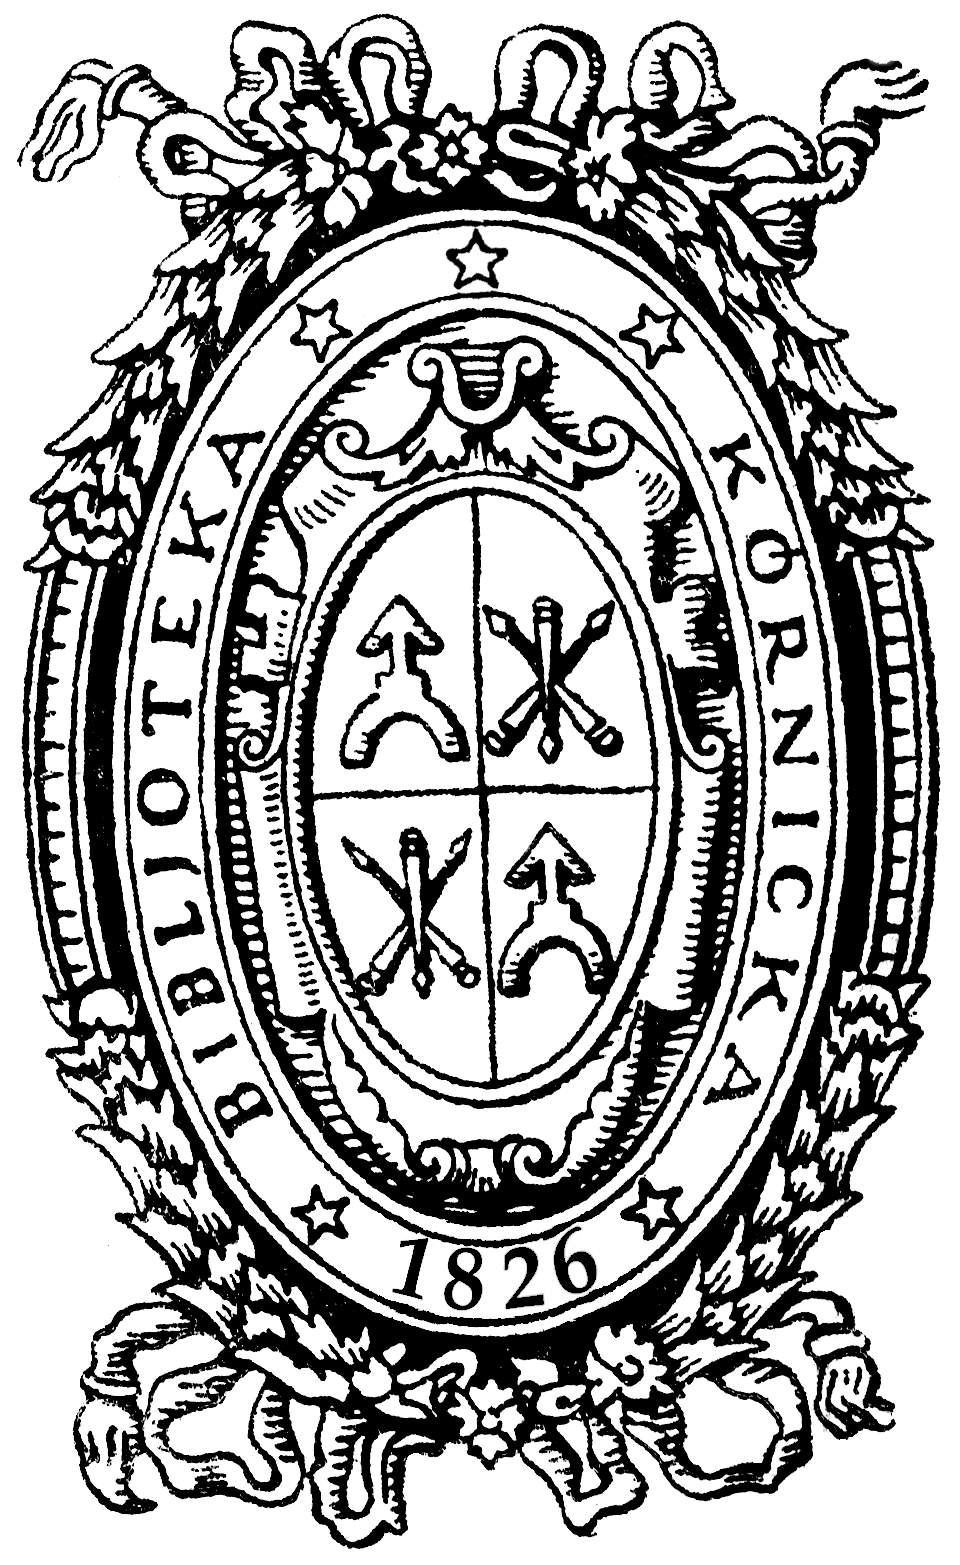 logo-bk-1826